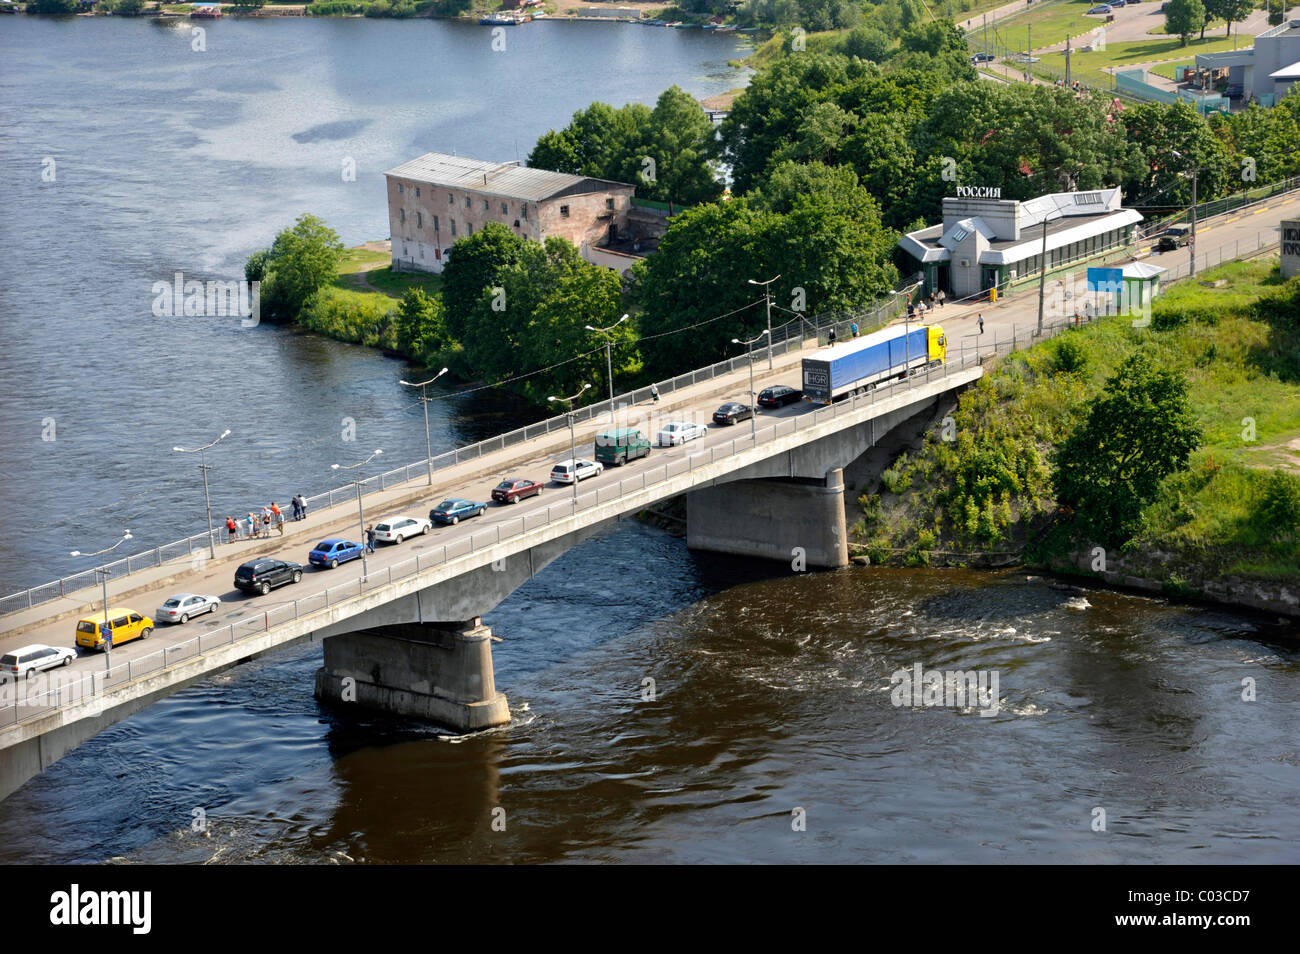 Brücke über den Fluss Narva, Grenze zwischen Estland und Russland, russische Grenze kontrollieren Bahnhof, Narva, Estland, Baltikum Stockfoto